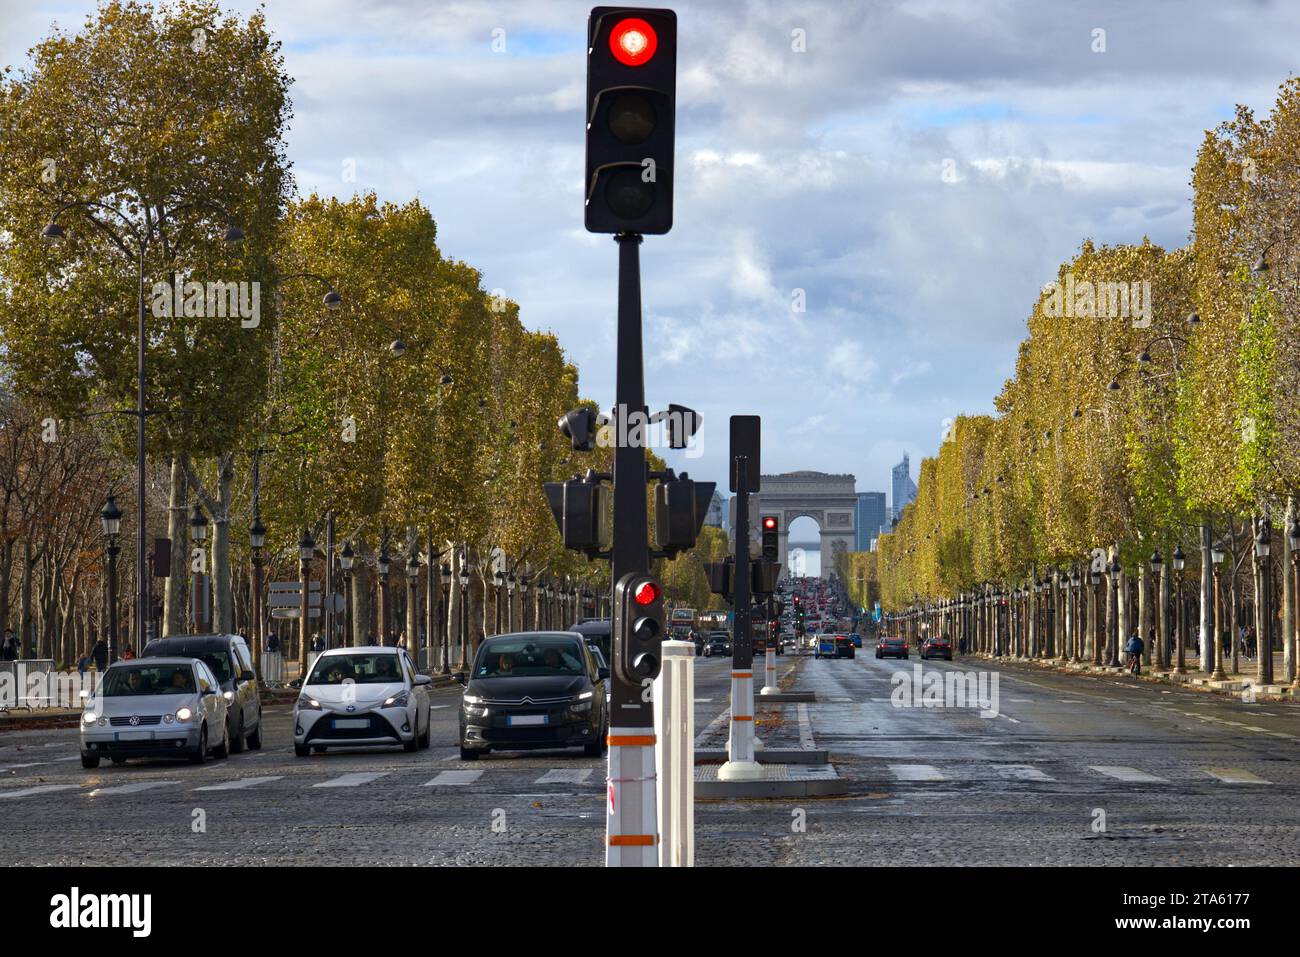 Paris, France - voitures attendant aux feux de circulation dans l'avenue animée des champs Elysées, avec l'Arc de Triomphe au loin Banque D'Images